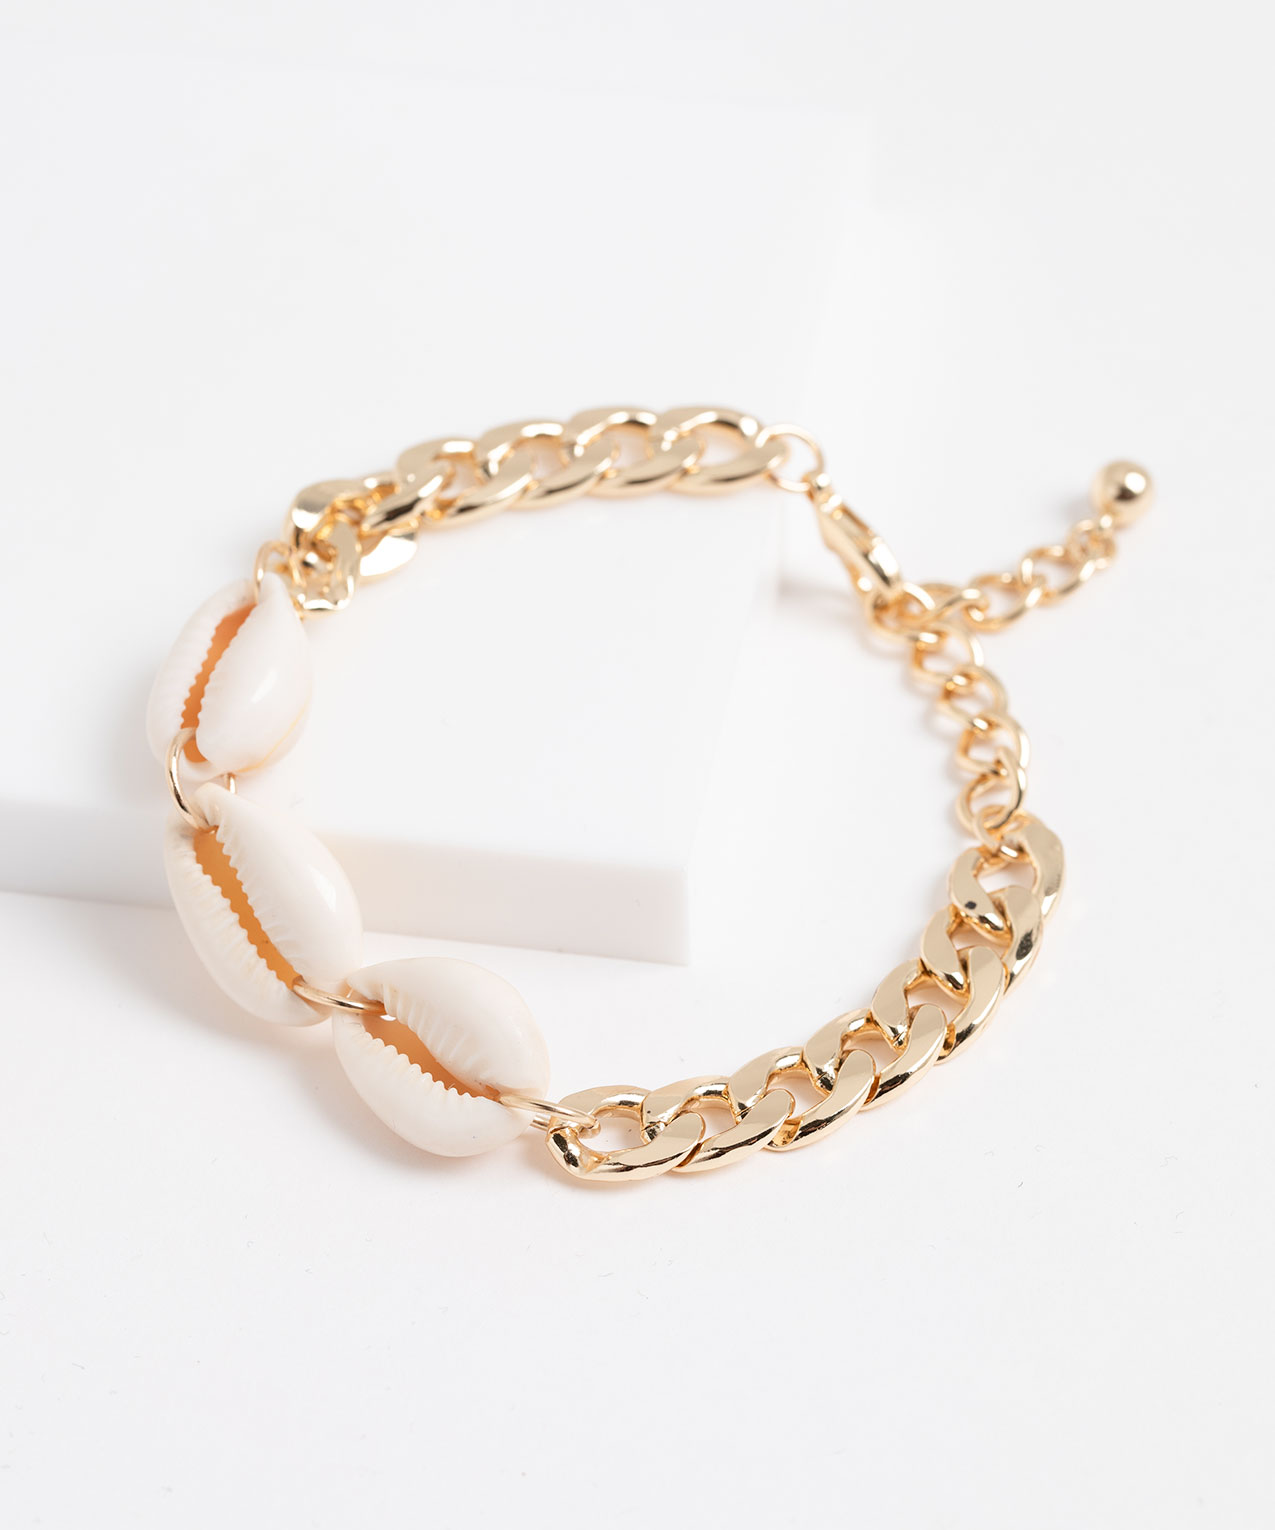 Shell & Chain Link Bracelet